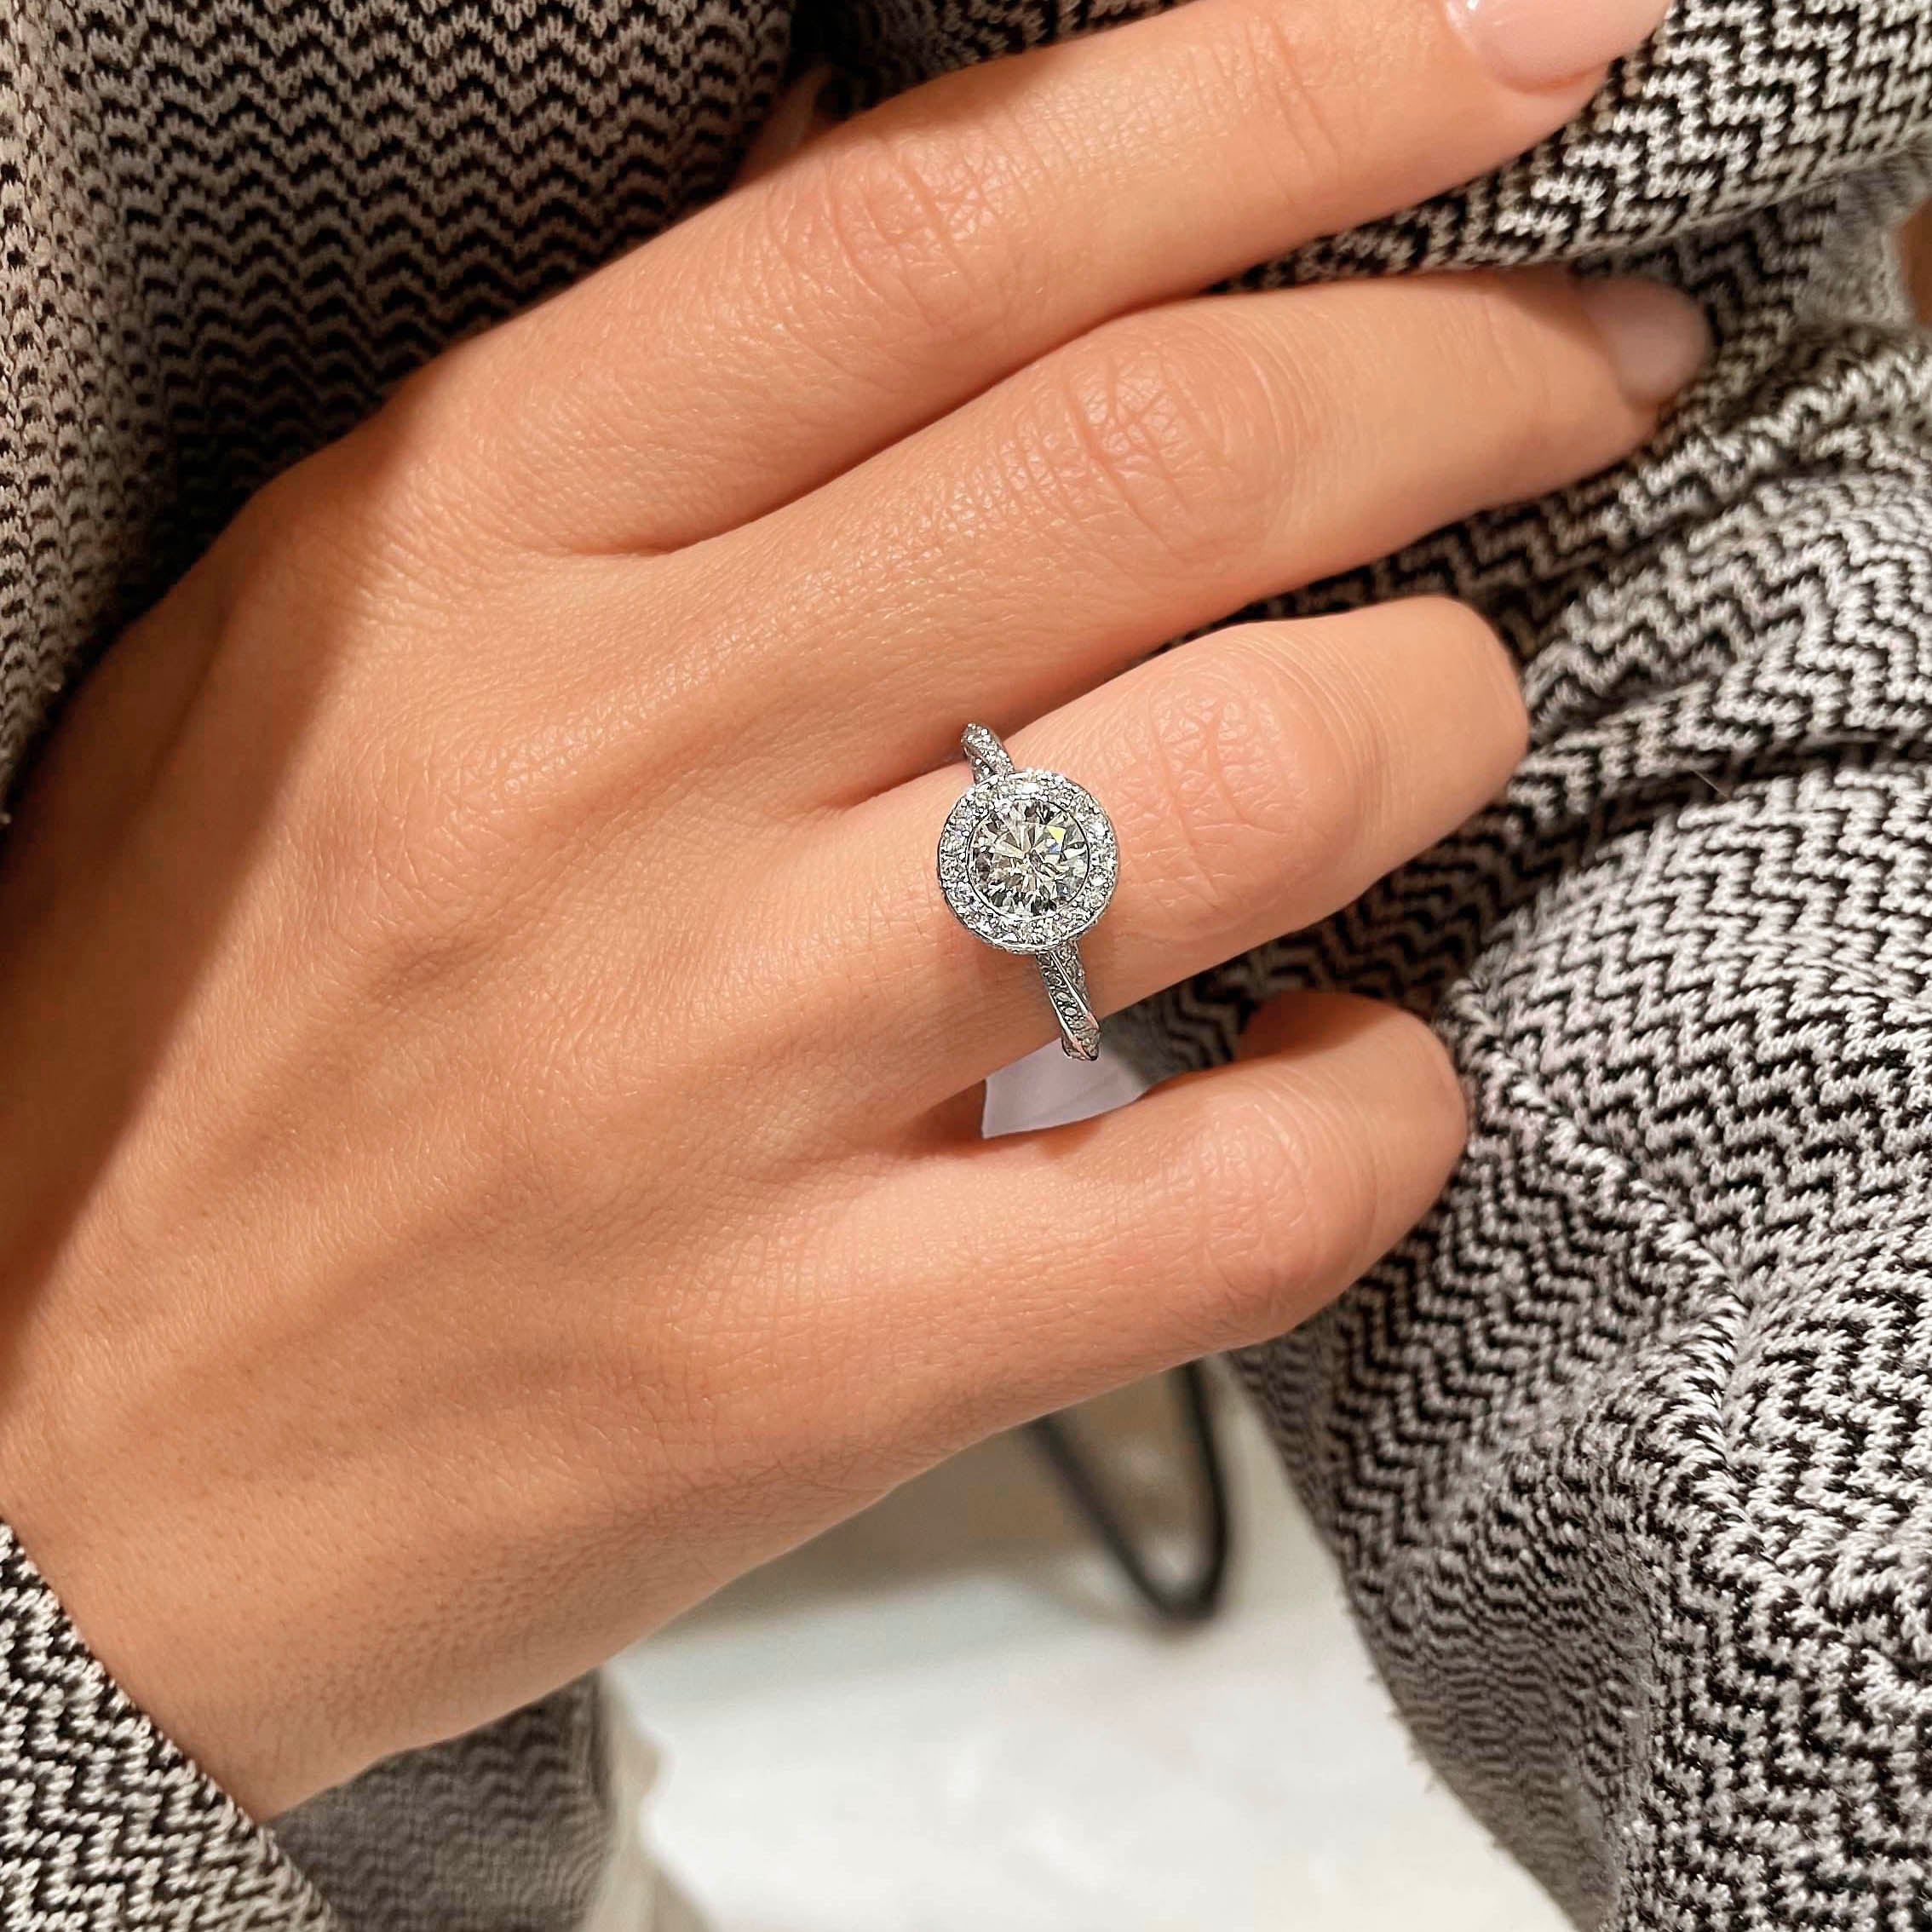 Sarina Diamond Engagement Ring   (1.7 Carat) -14K White Gold